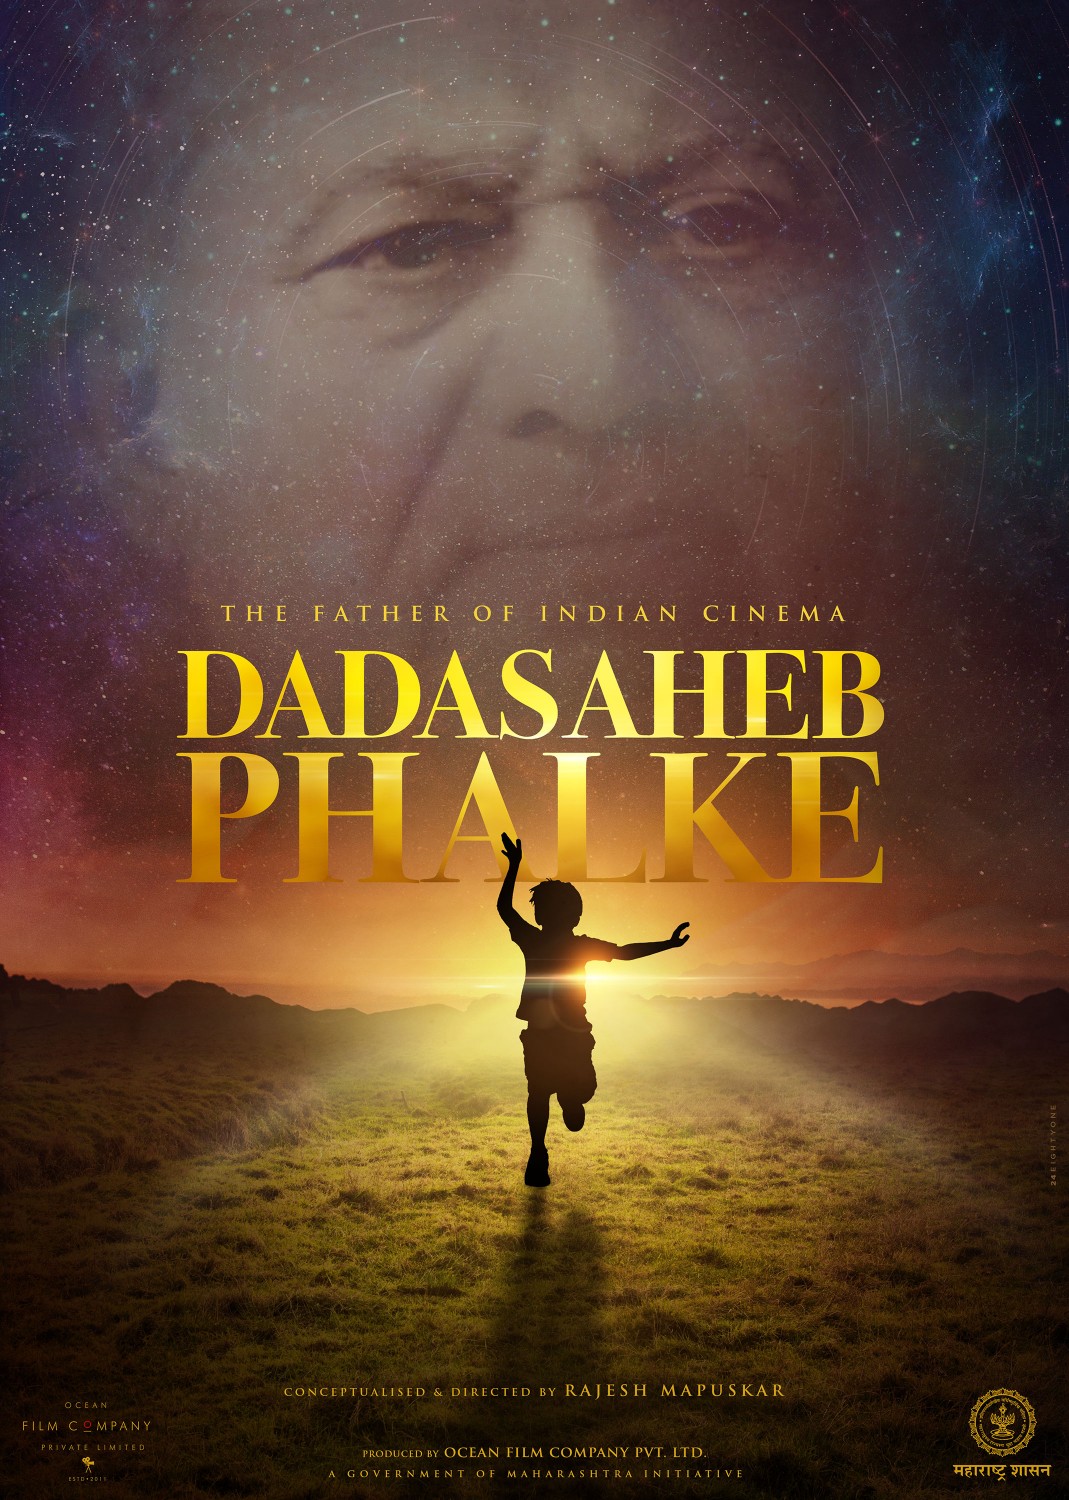 Extra Large Movie Poster Image for Dadasaheb Phalke